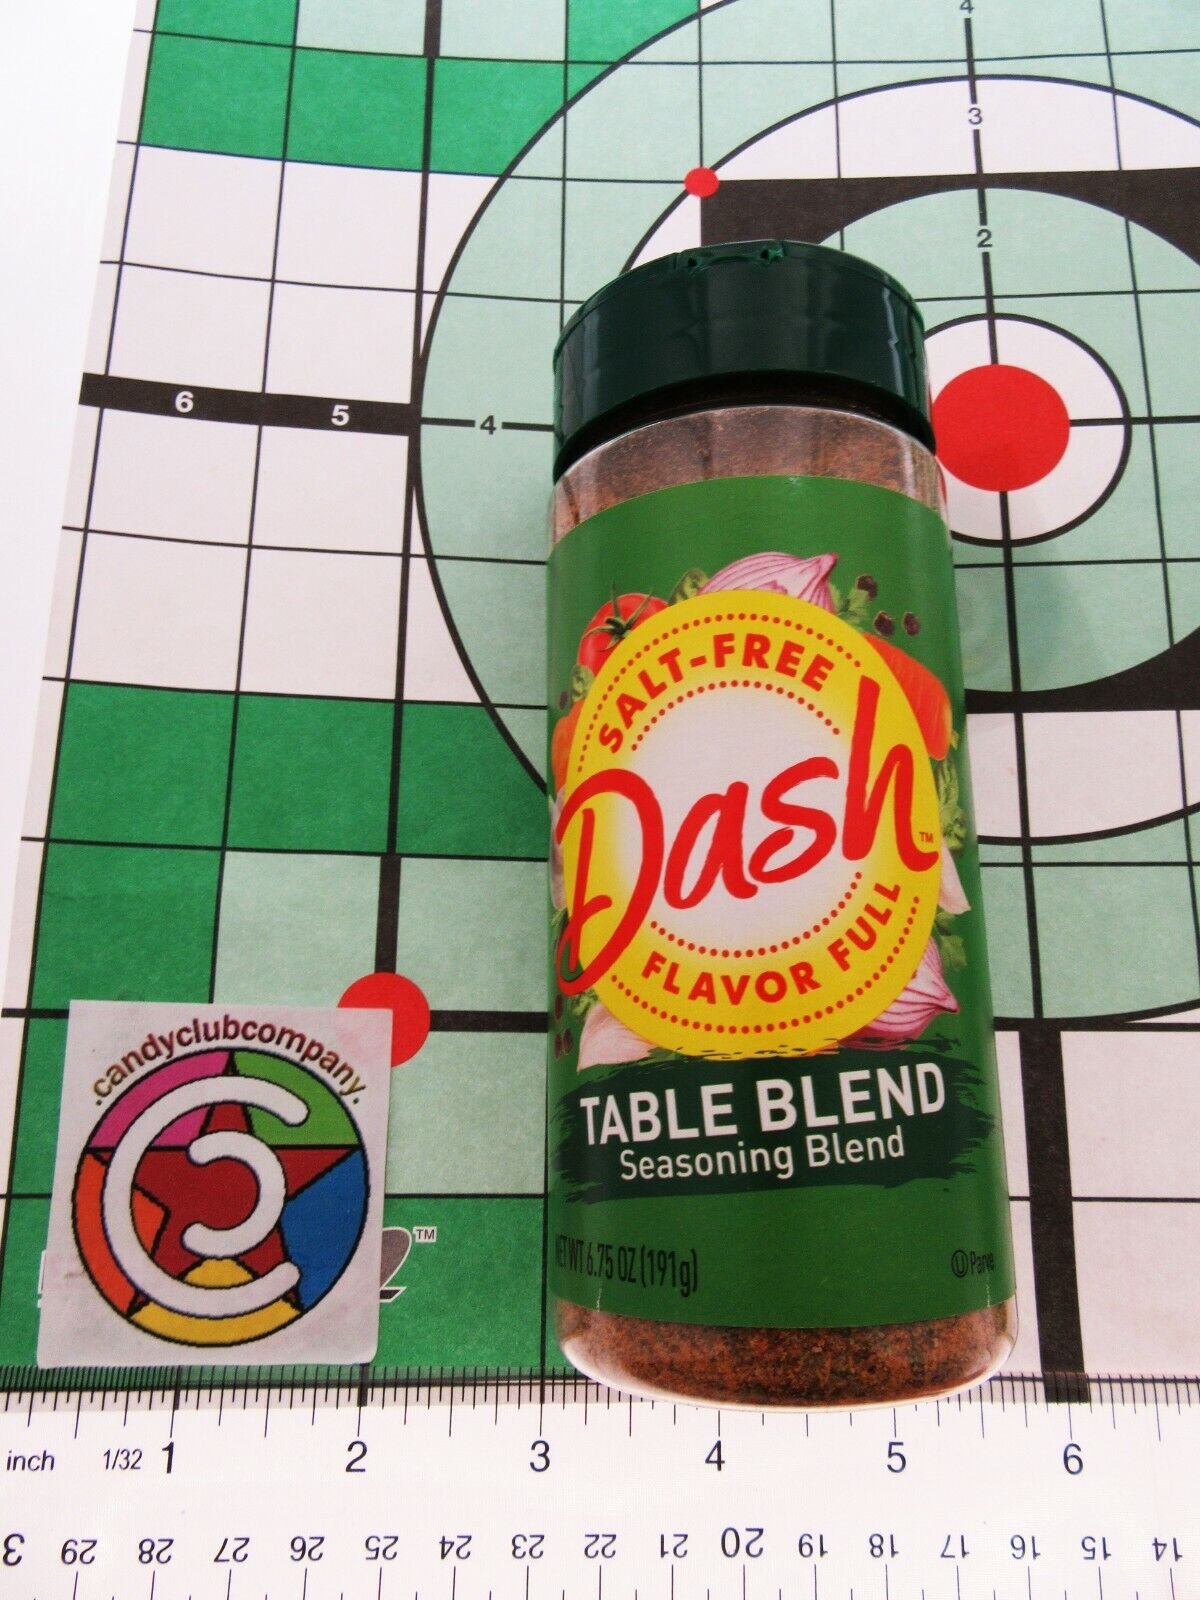 Dash Seasoning Blend, Original - 21 oz